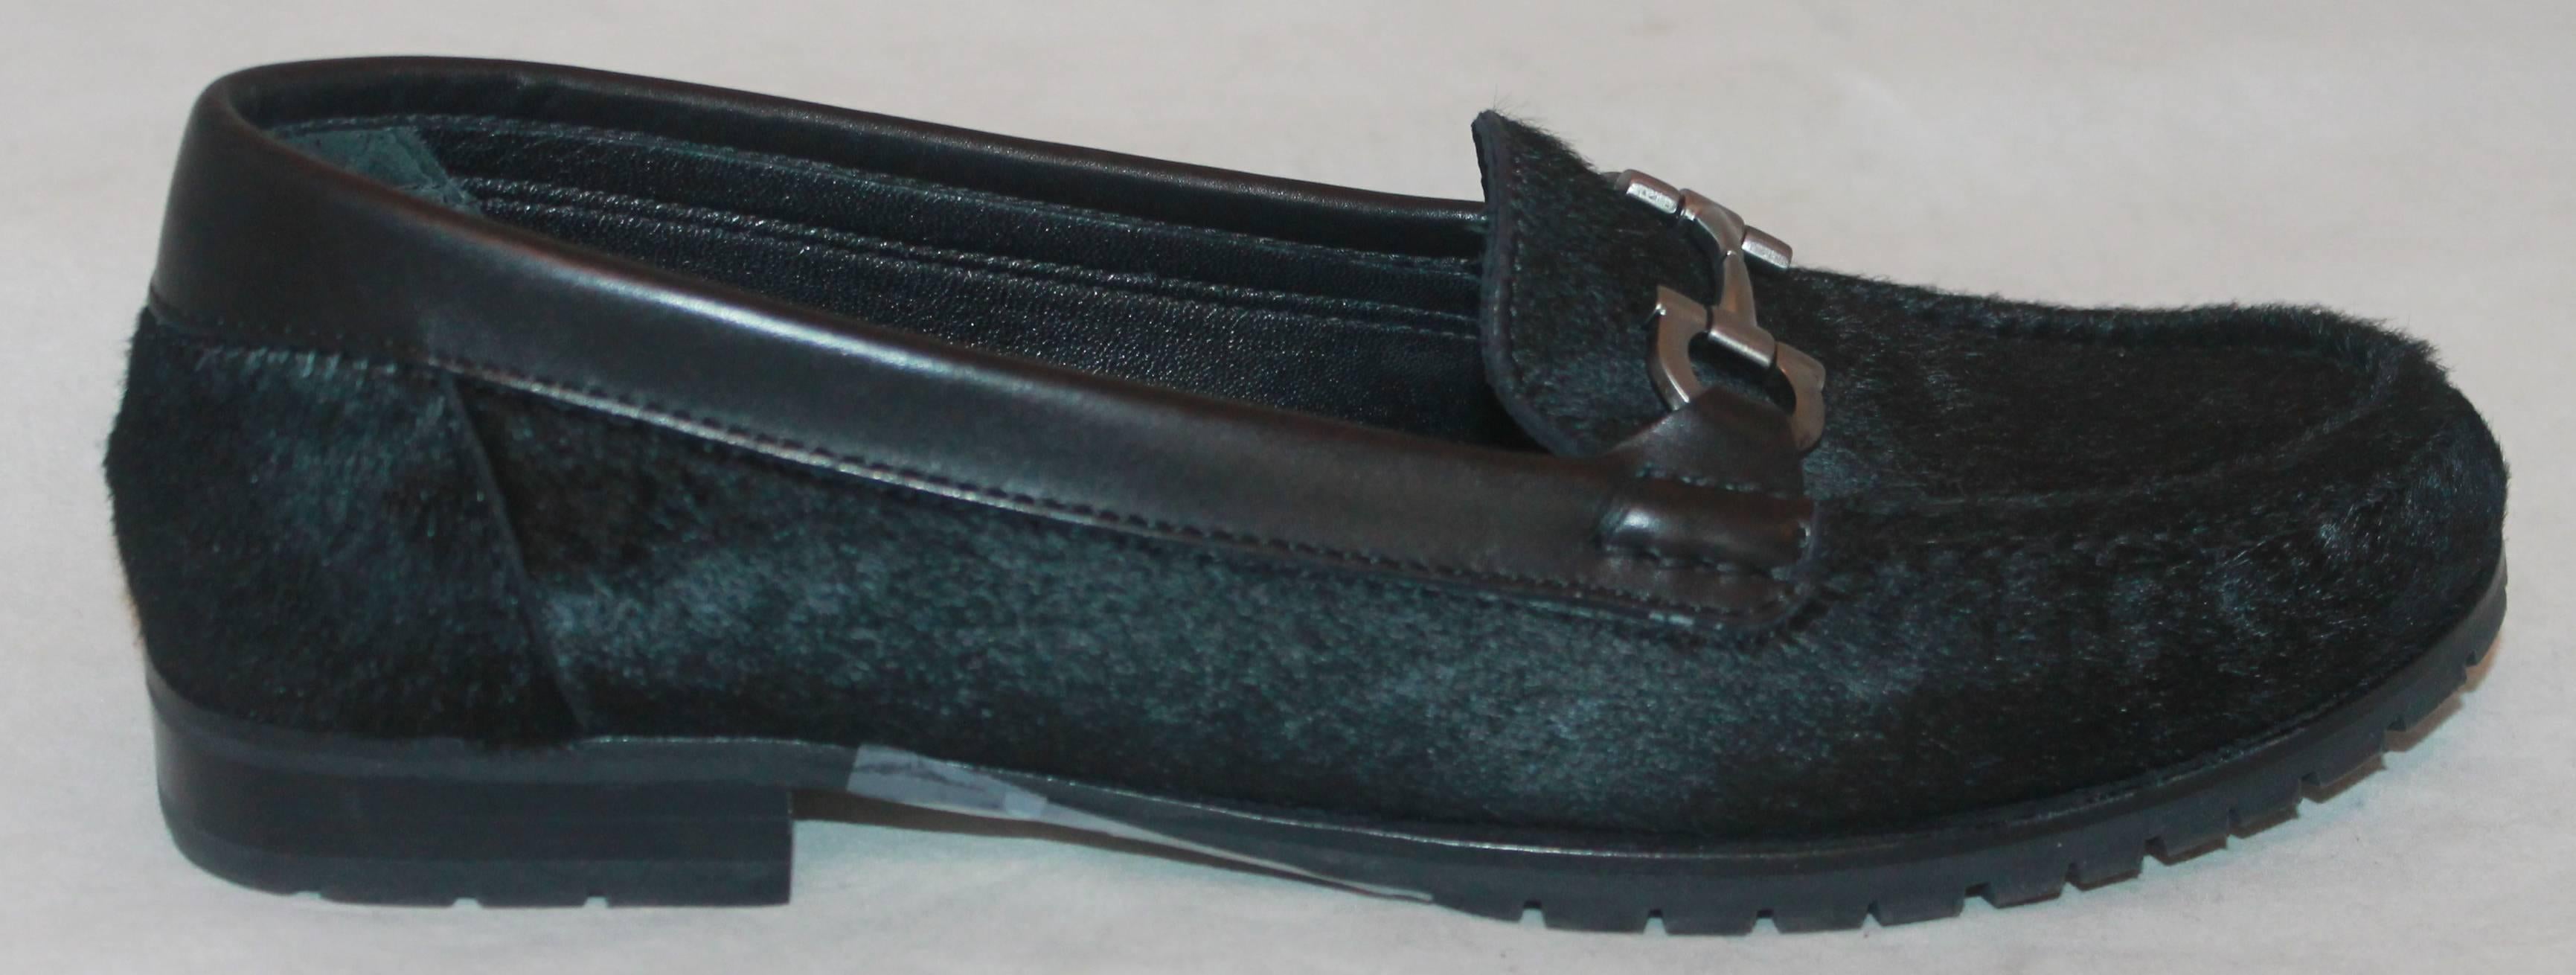 Salvatore Ferragamo Schwarz Pony Haar Loafers w / Silber Front Schnalle - 7AA.  Diese Schuhe haben geringfügige Abnutzung an der Unterseite der Seele und ein kleines Stück der Gummi darunter, dass fehlt.  Ansonsten sind sie in einem sehr guten